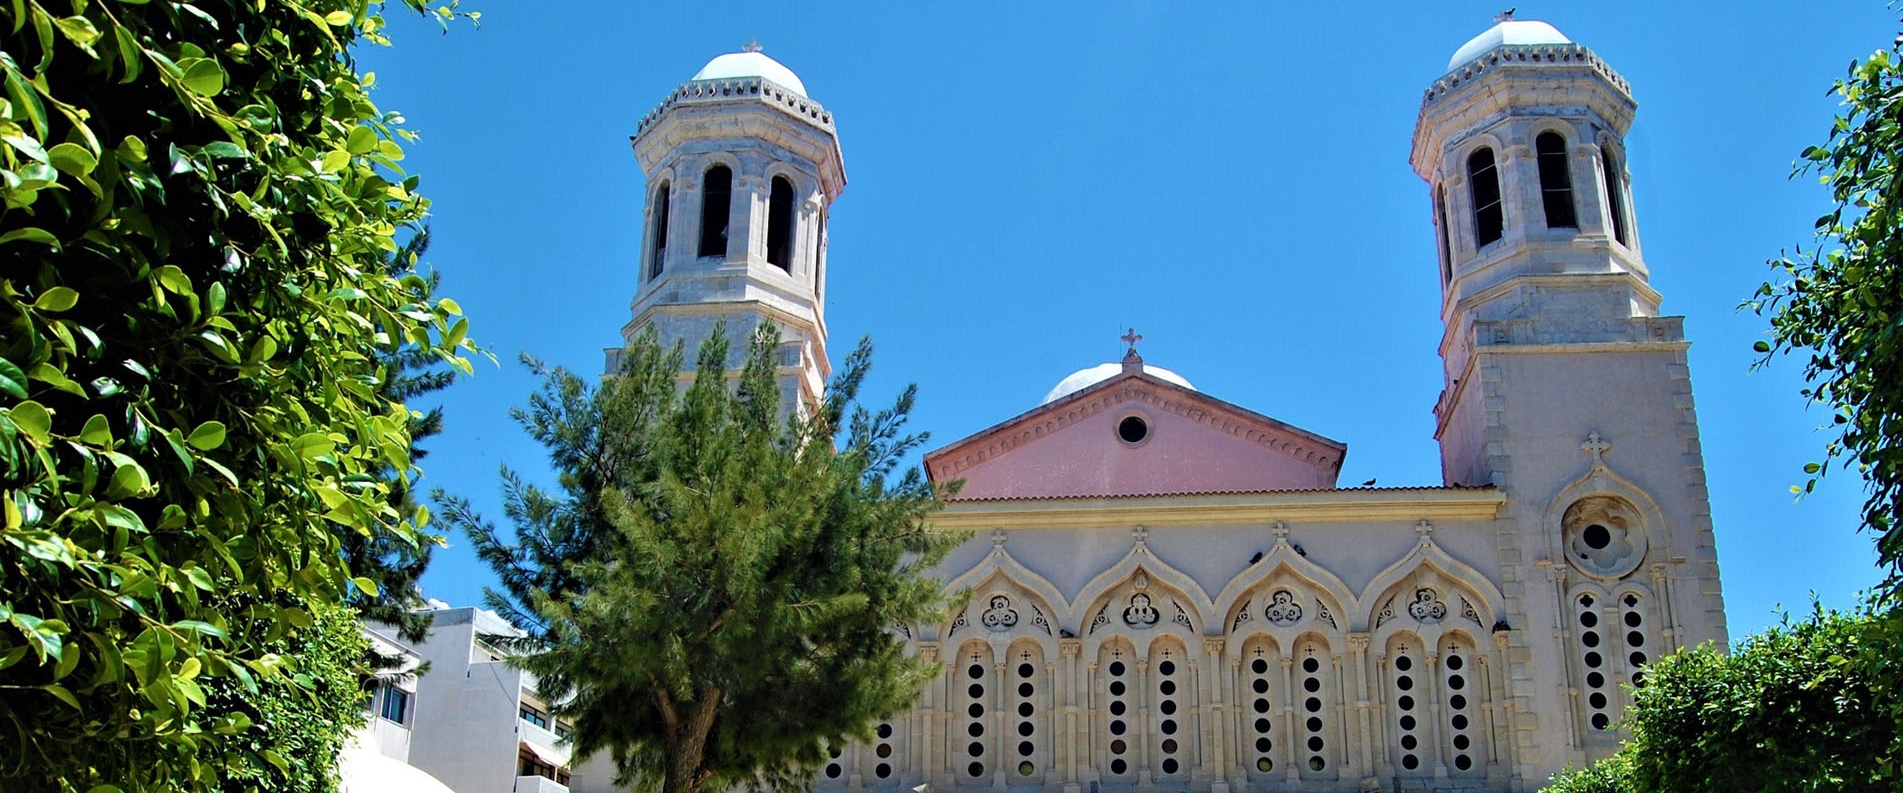 Христианство на Кипре: обзор, главные события, достопримечательности и персоны